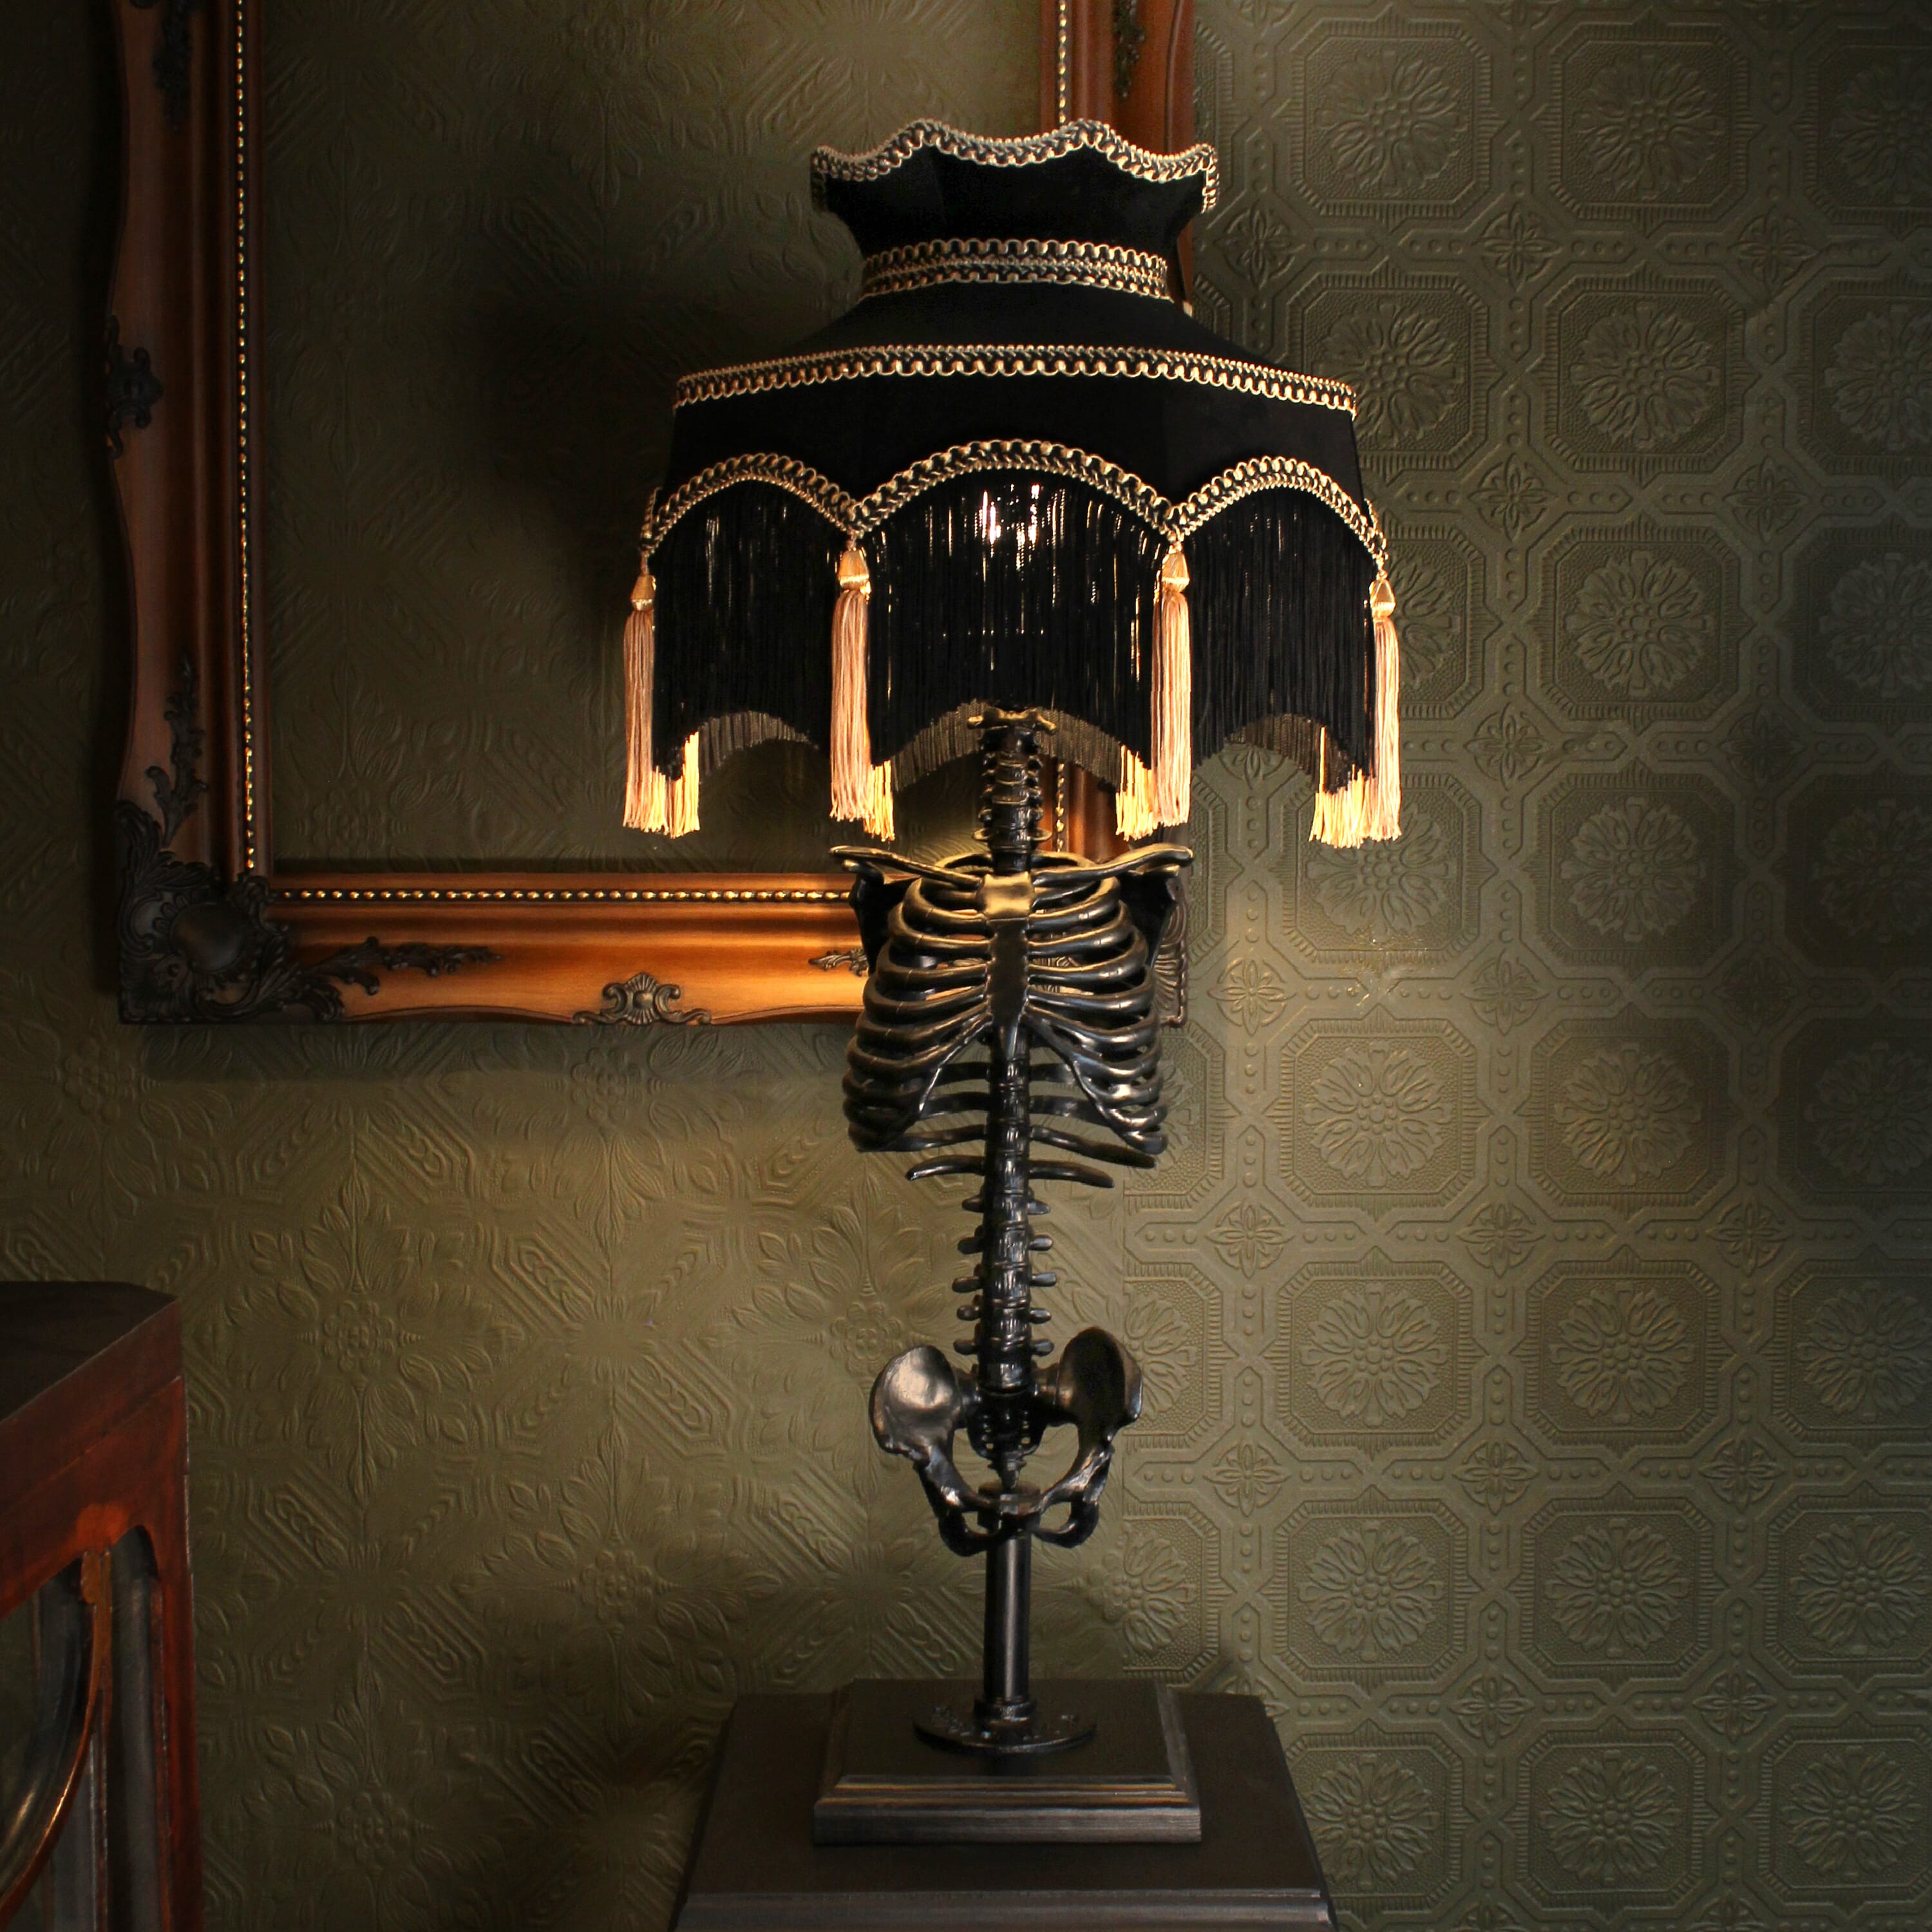 Nancy Skeleton table lamp - The Blackened teeth